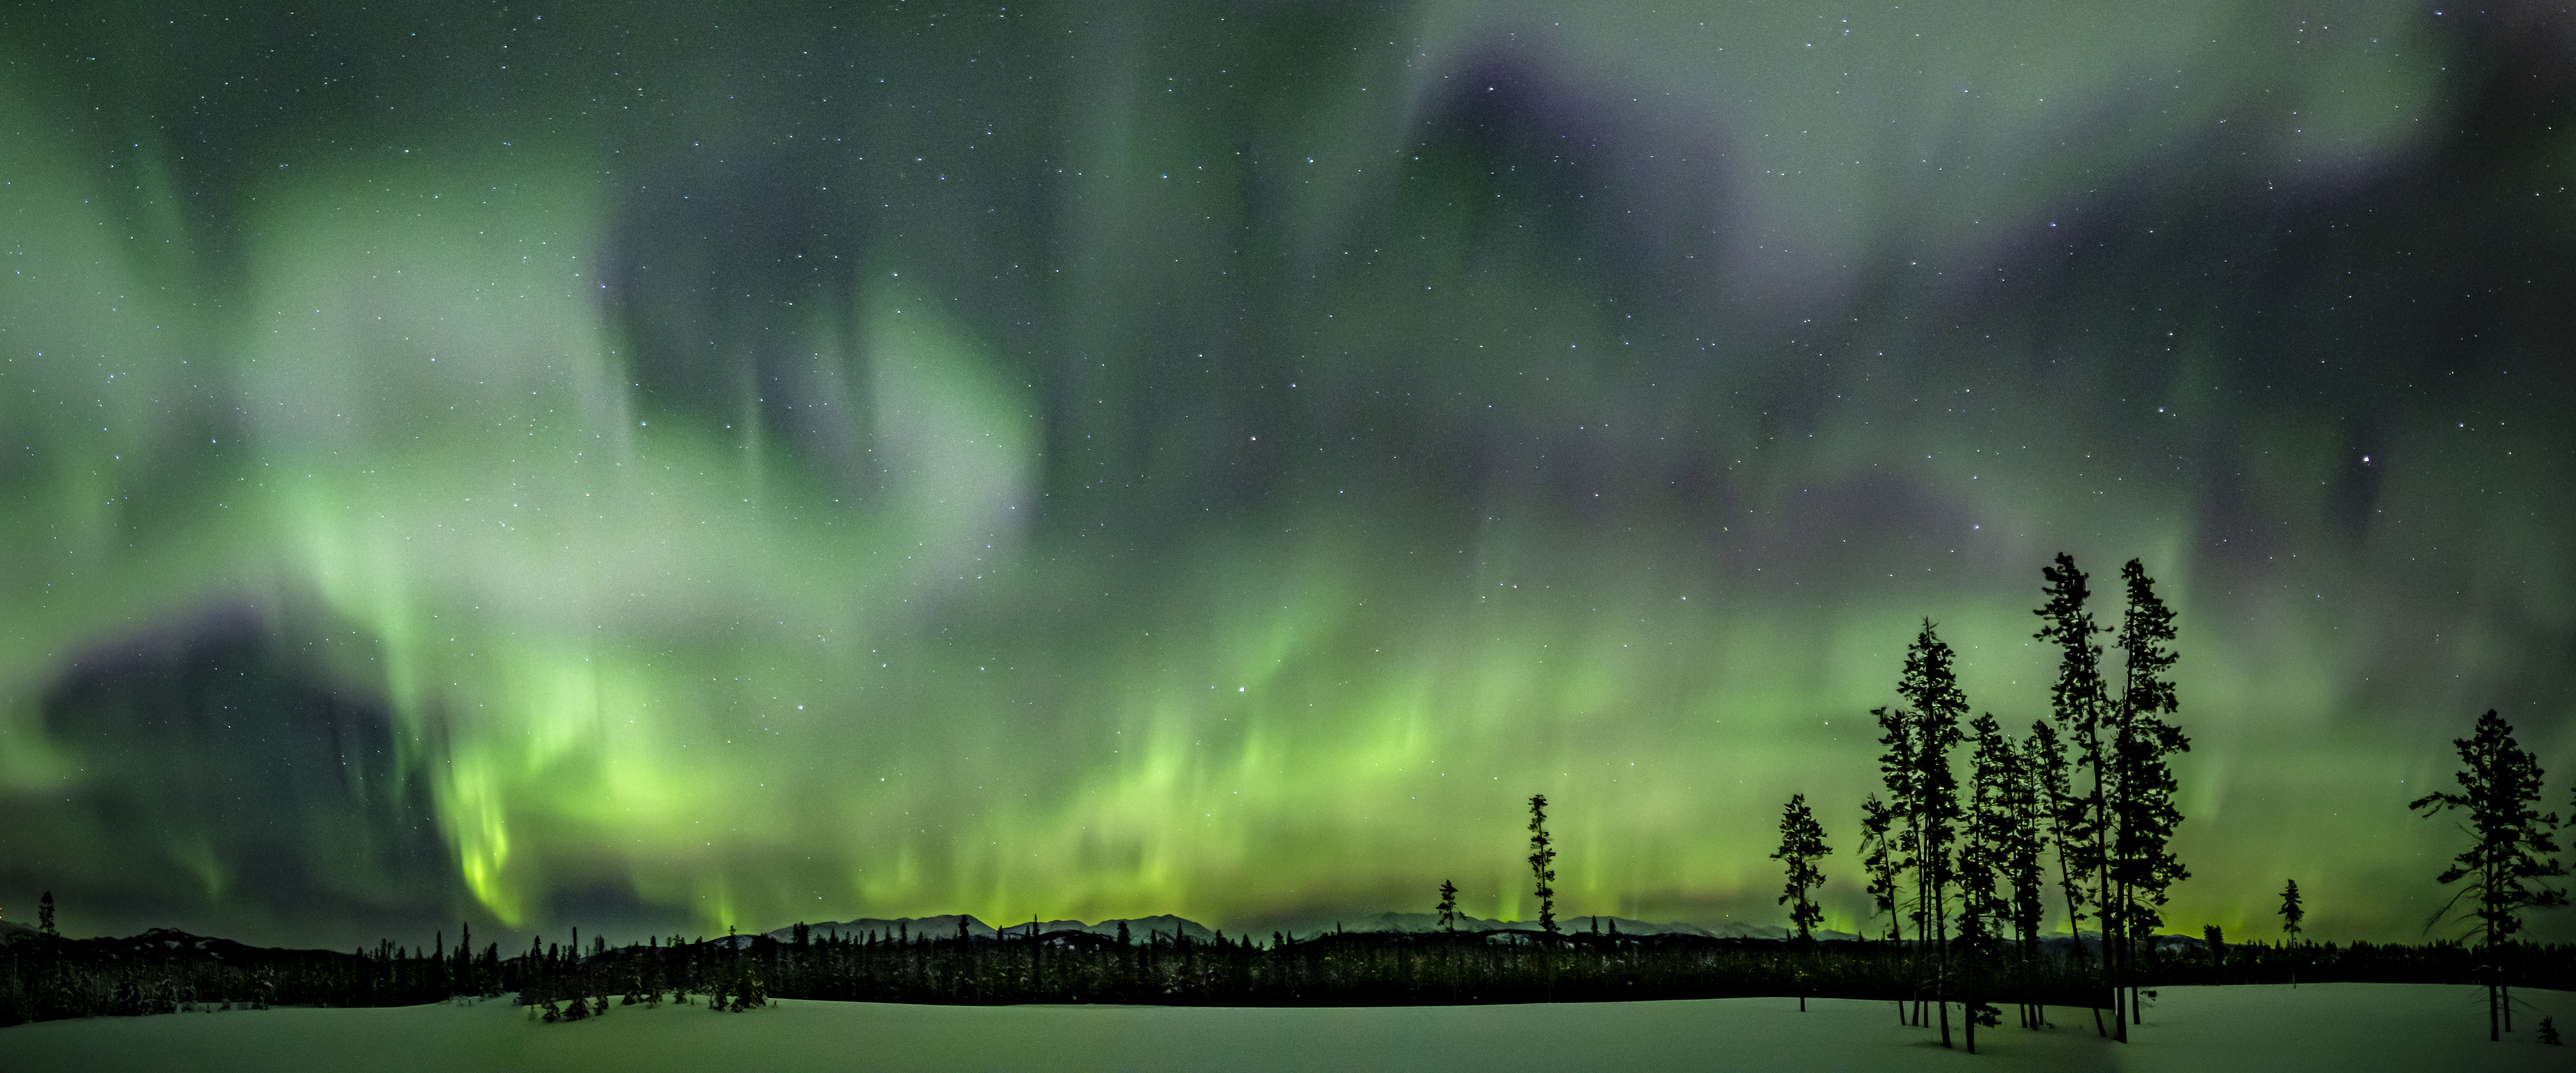 Aurora borealis lamp -  Canada